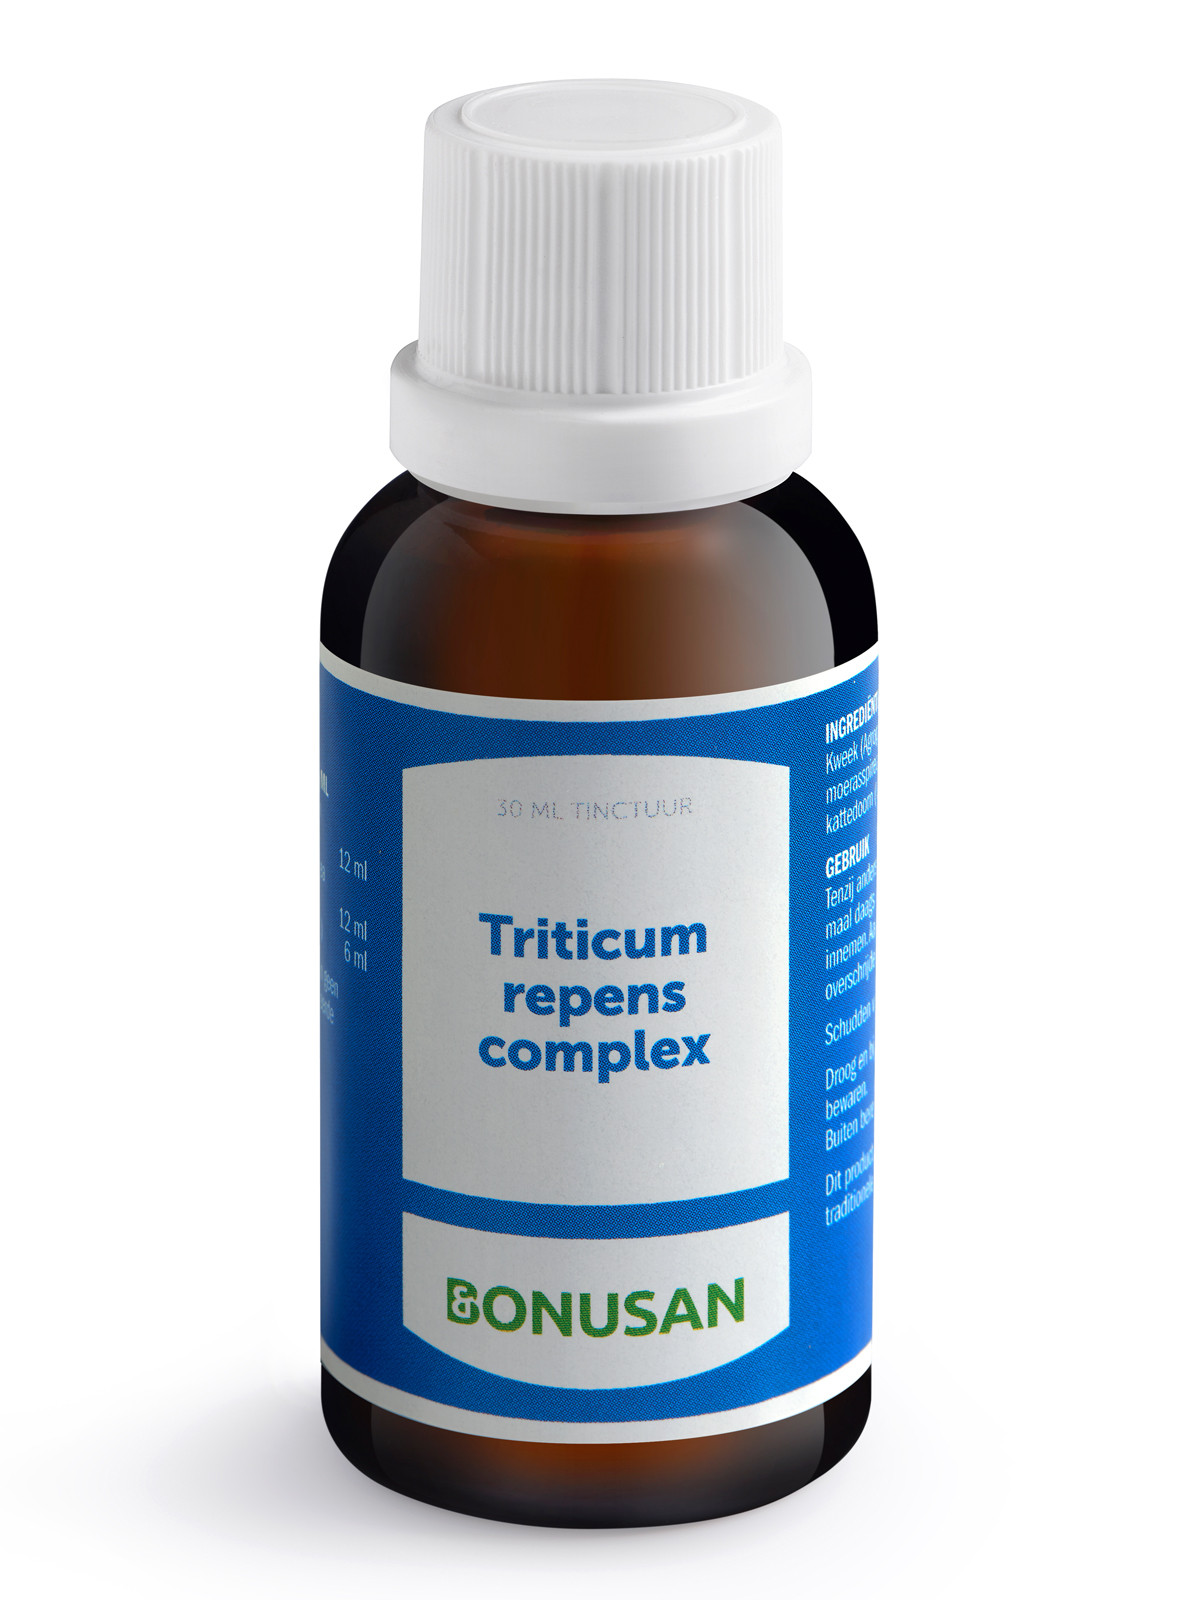 Bonusan - Triticum repens complex (binnenkort uit assortiment)